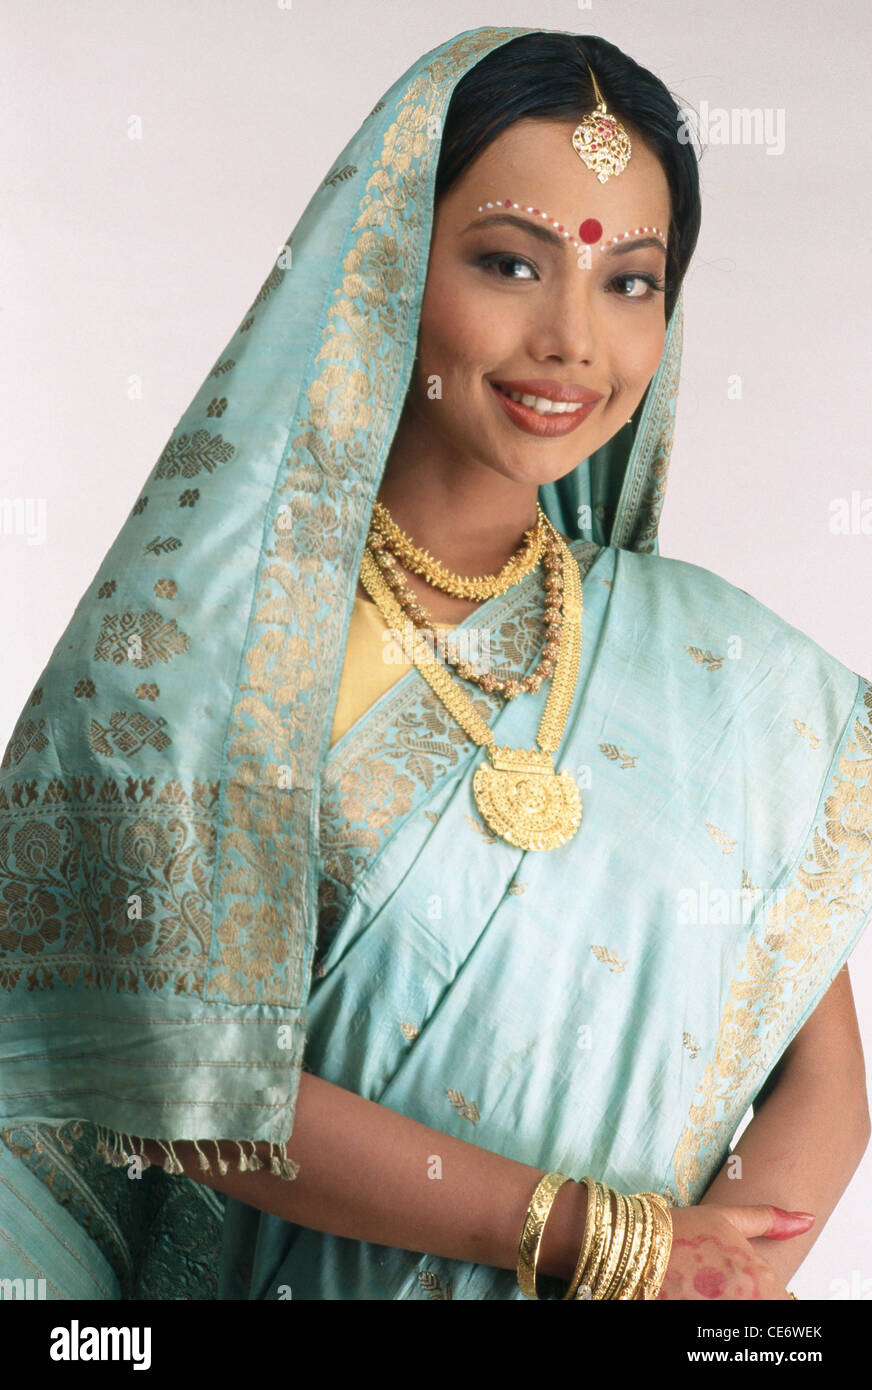 1,451 Assam Dress Images, Stock Photos, 3D objects, & Vectors | Shutterstock